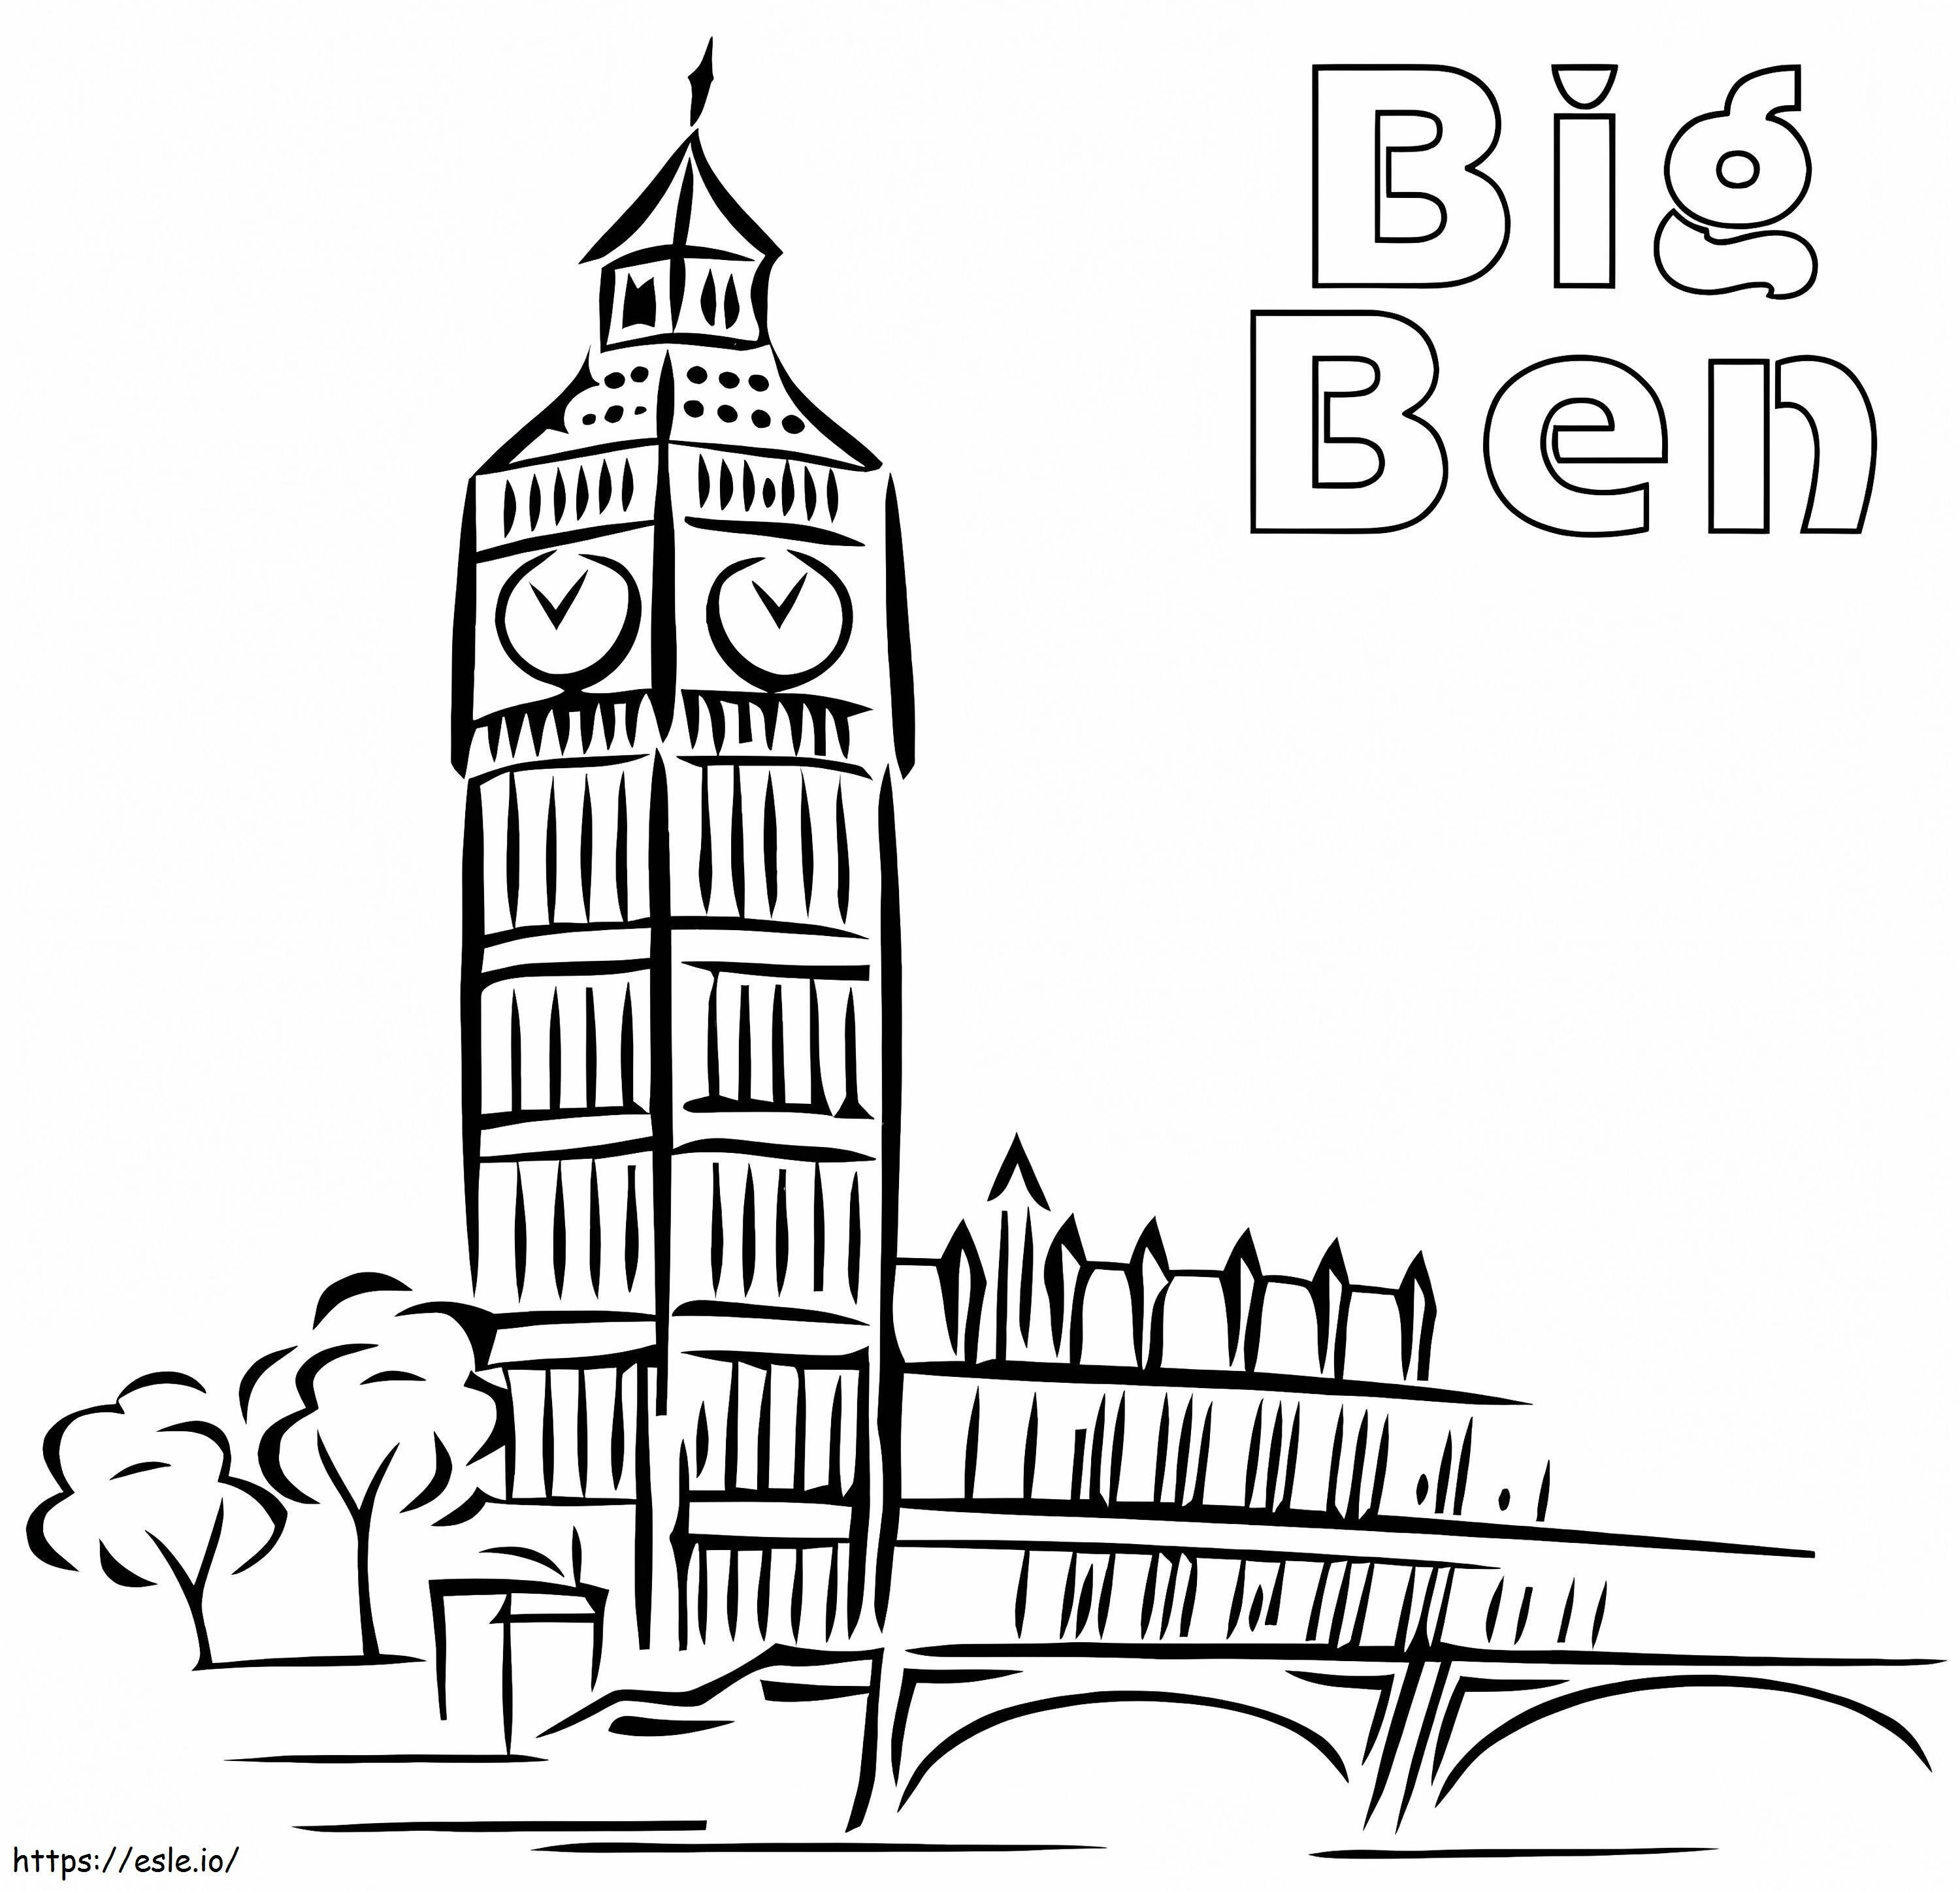 Big Ben gratuito da colorare